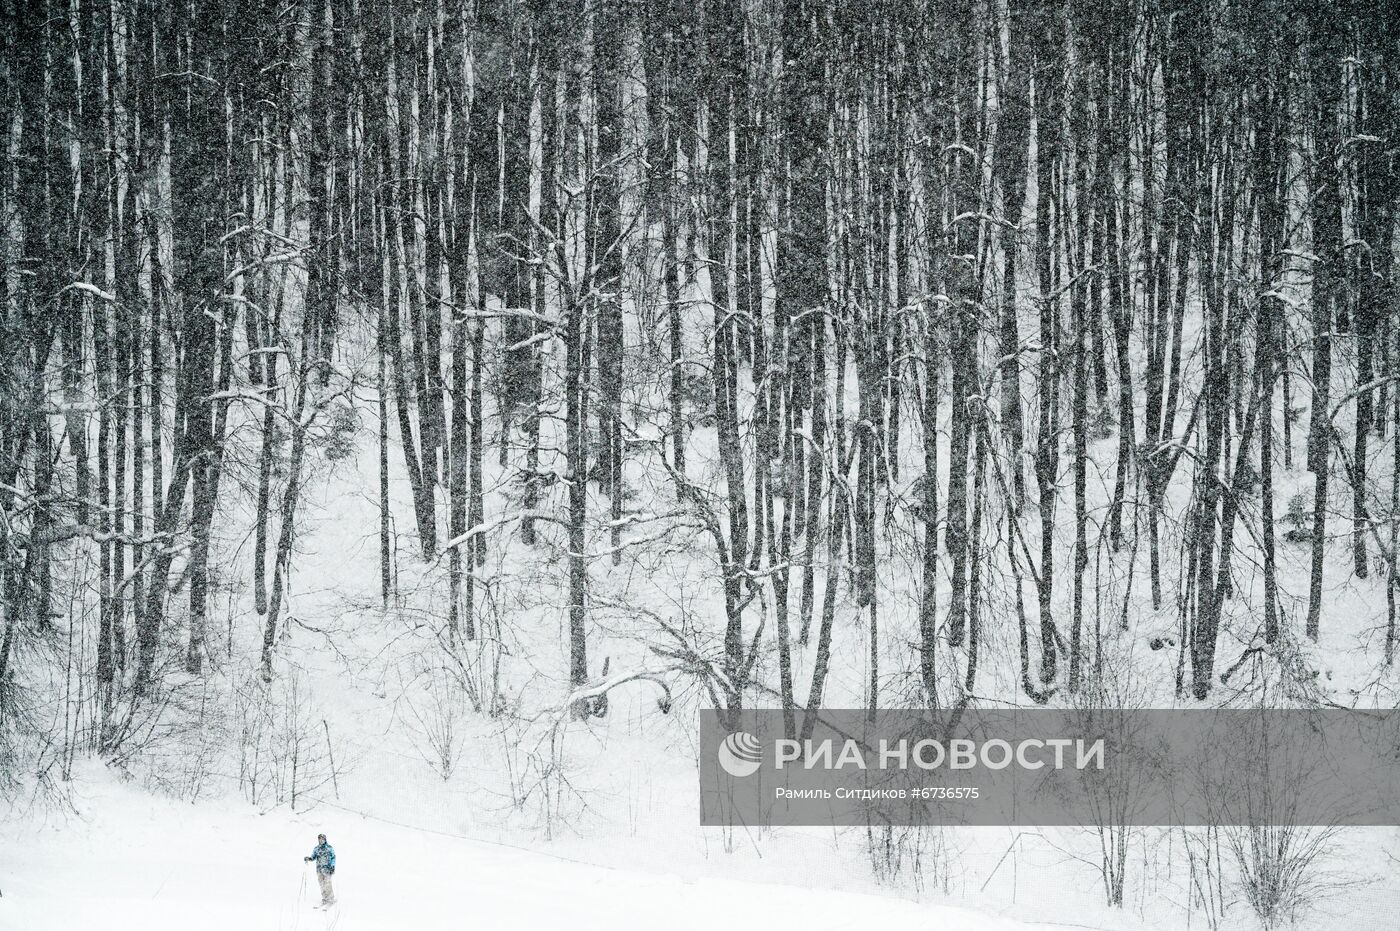 Катание на лыжах в Москве